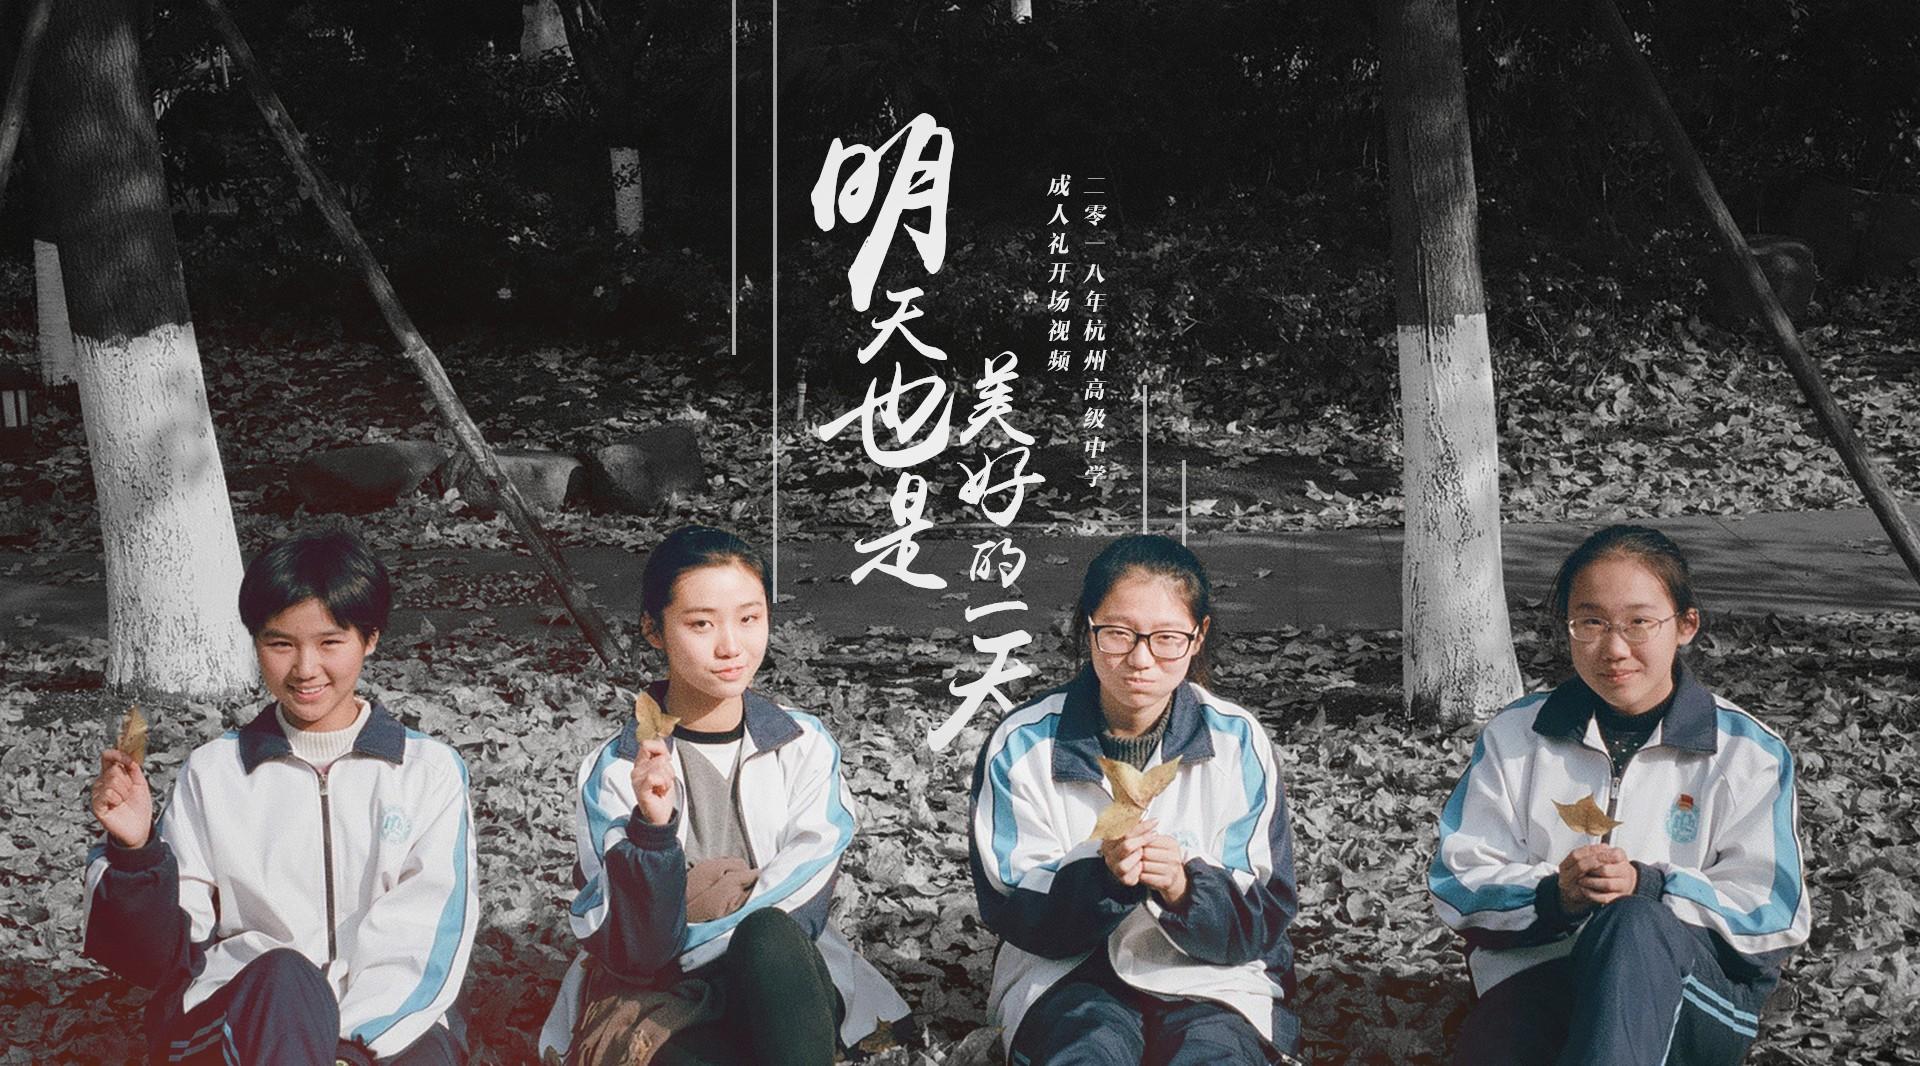 杭州高级中学2018年成人礼开场视频《明天也是美好的一天》